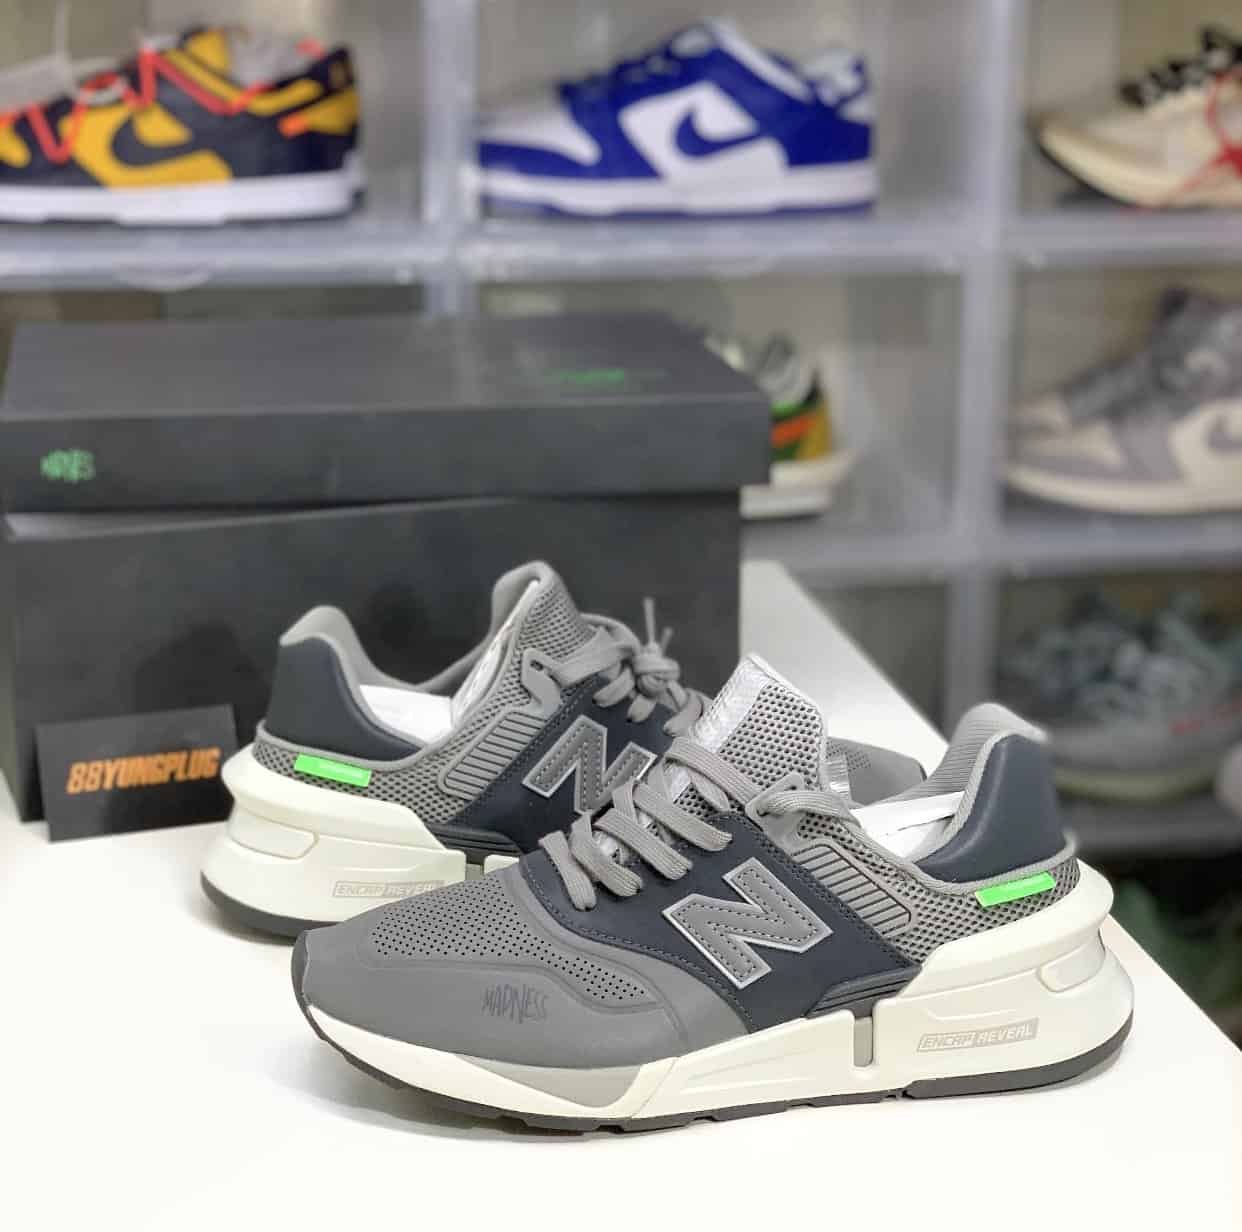 New balance x Madness 997S GREY - 88YungPlug Sneaker Store Kuala Lumpur